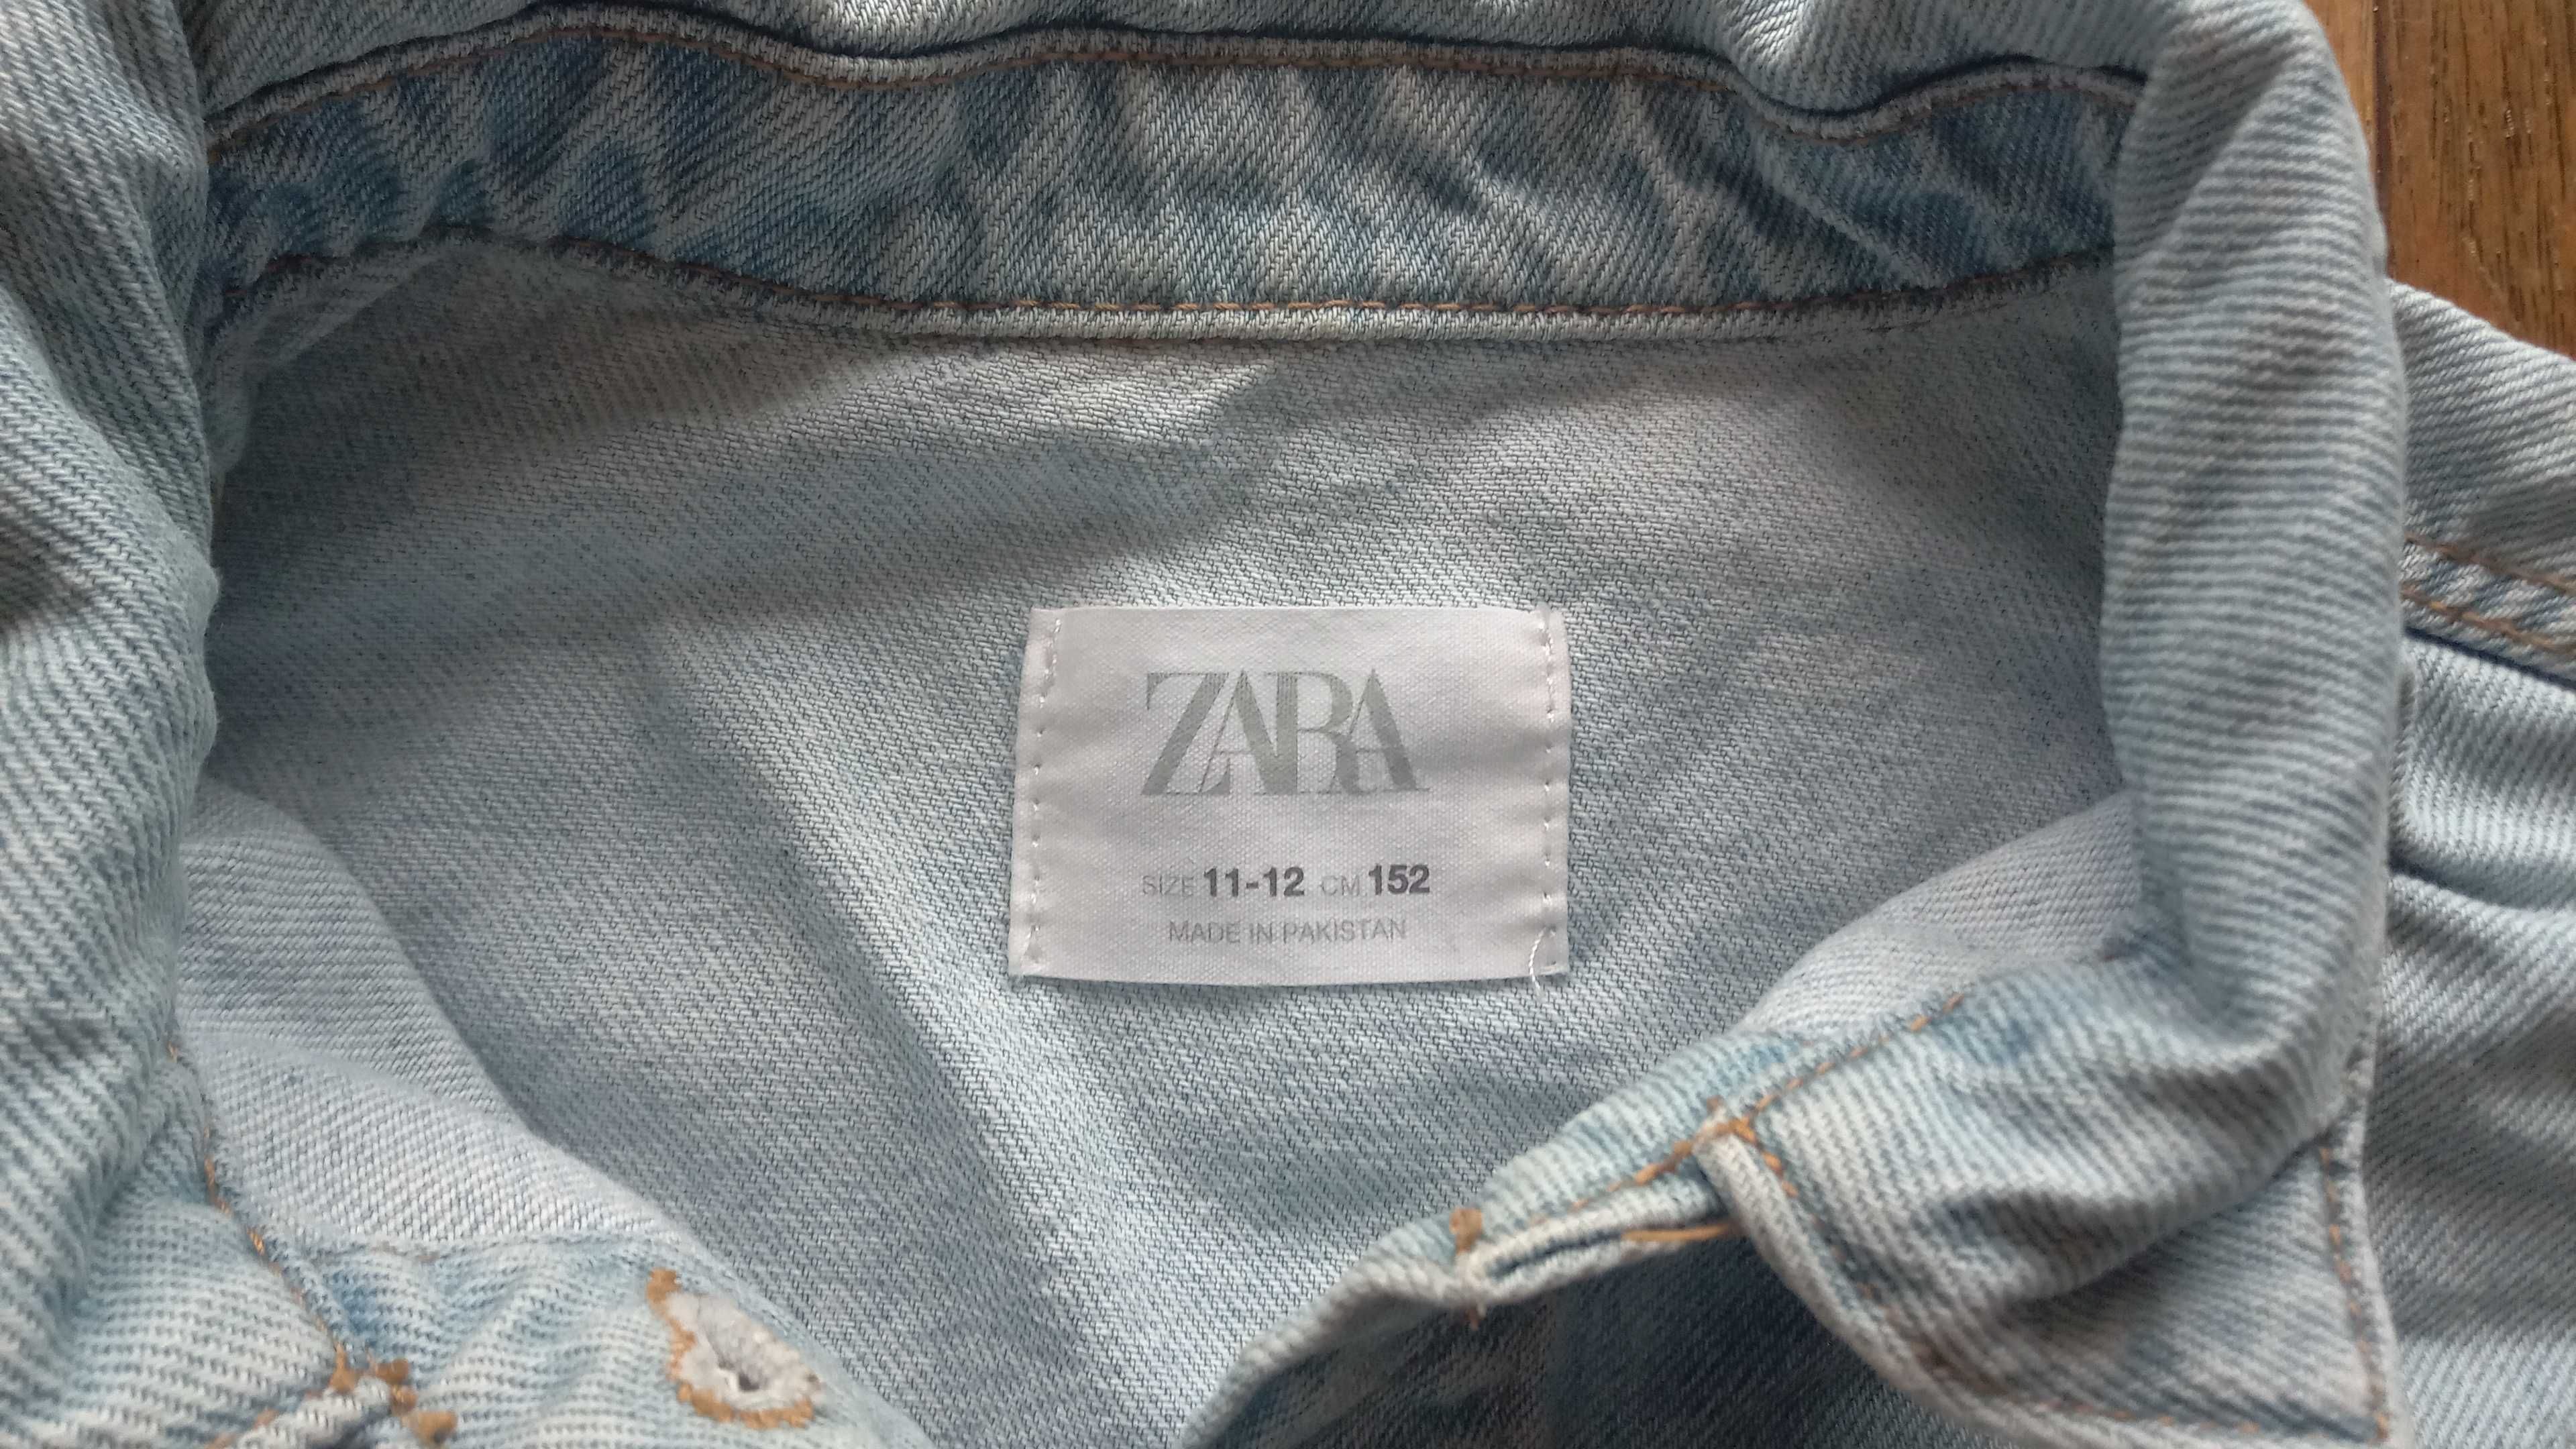 Kurtka jeansowa dla dziewczynki Zara. Wiek 11-12. Rozmiar 152.